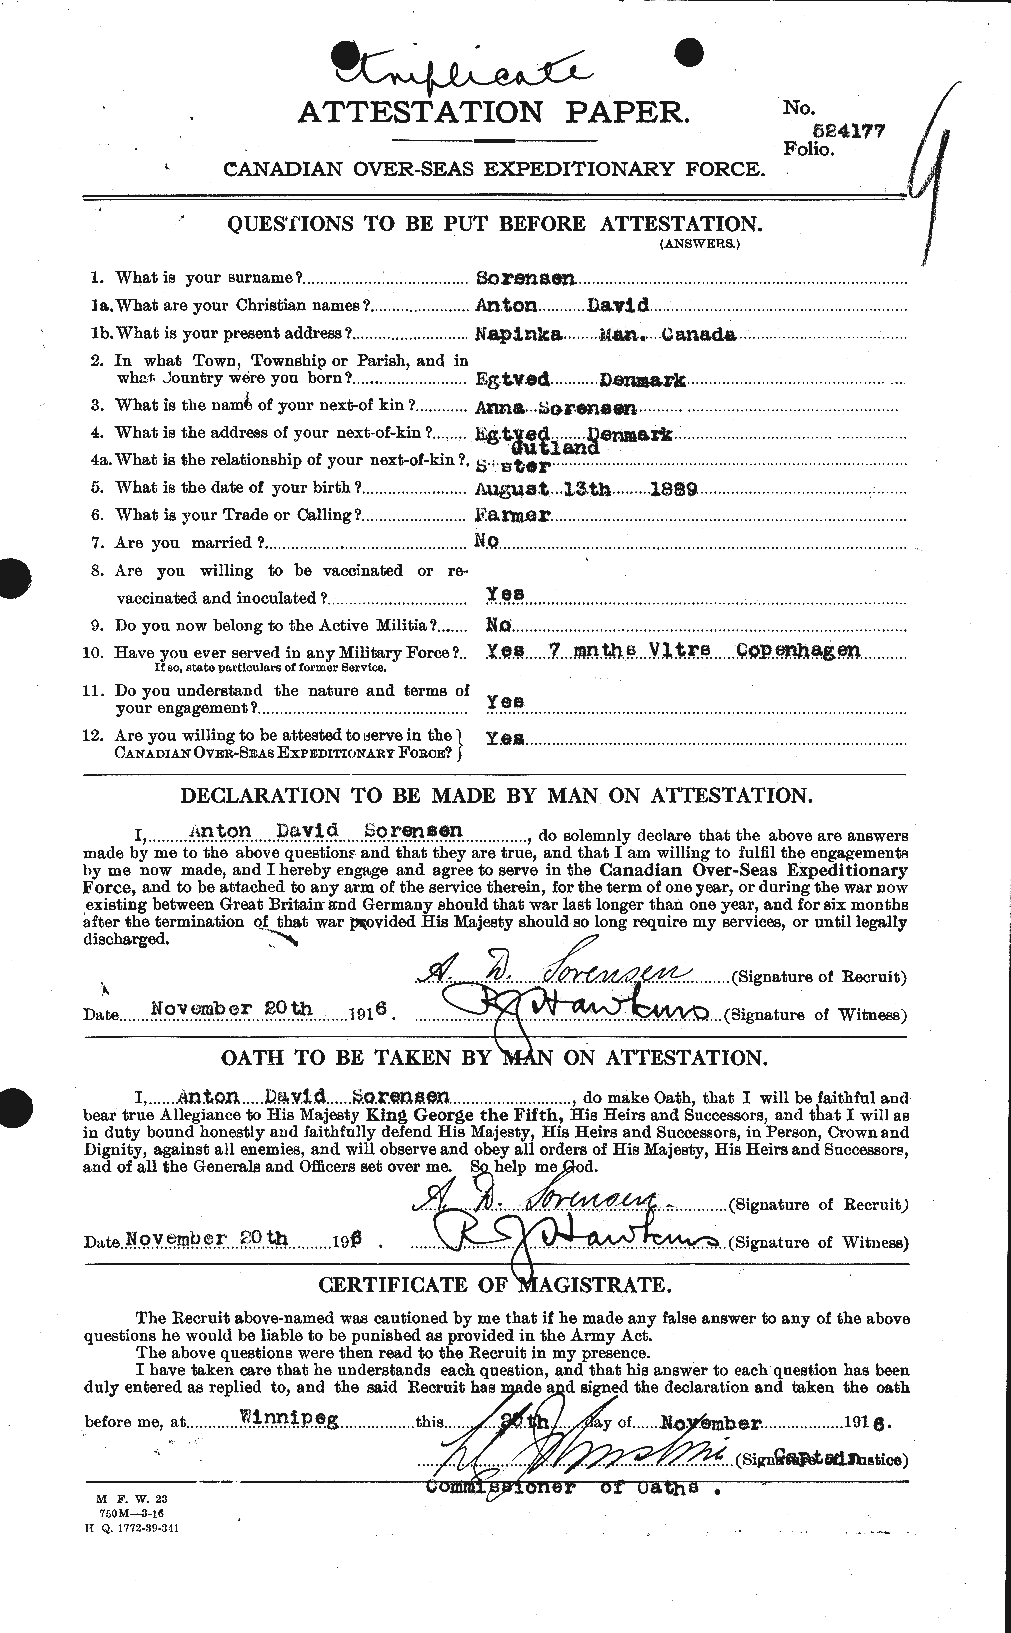 Dossiers du Personnel de la Première Guerre mondiale - CEC 110167a